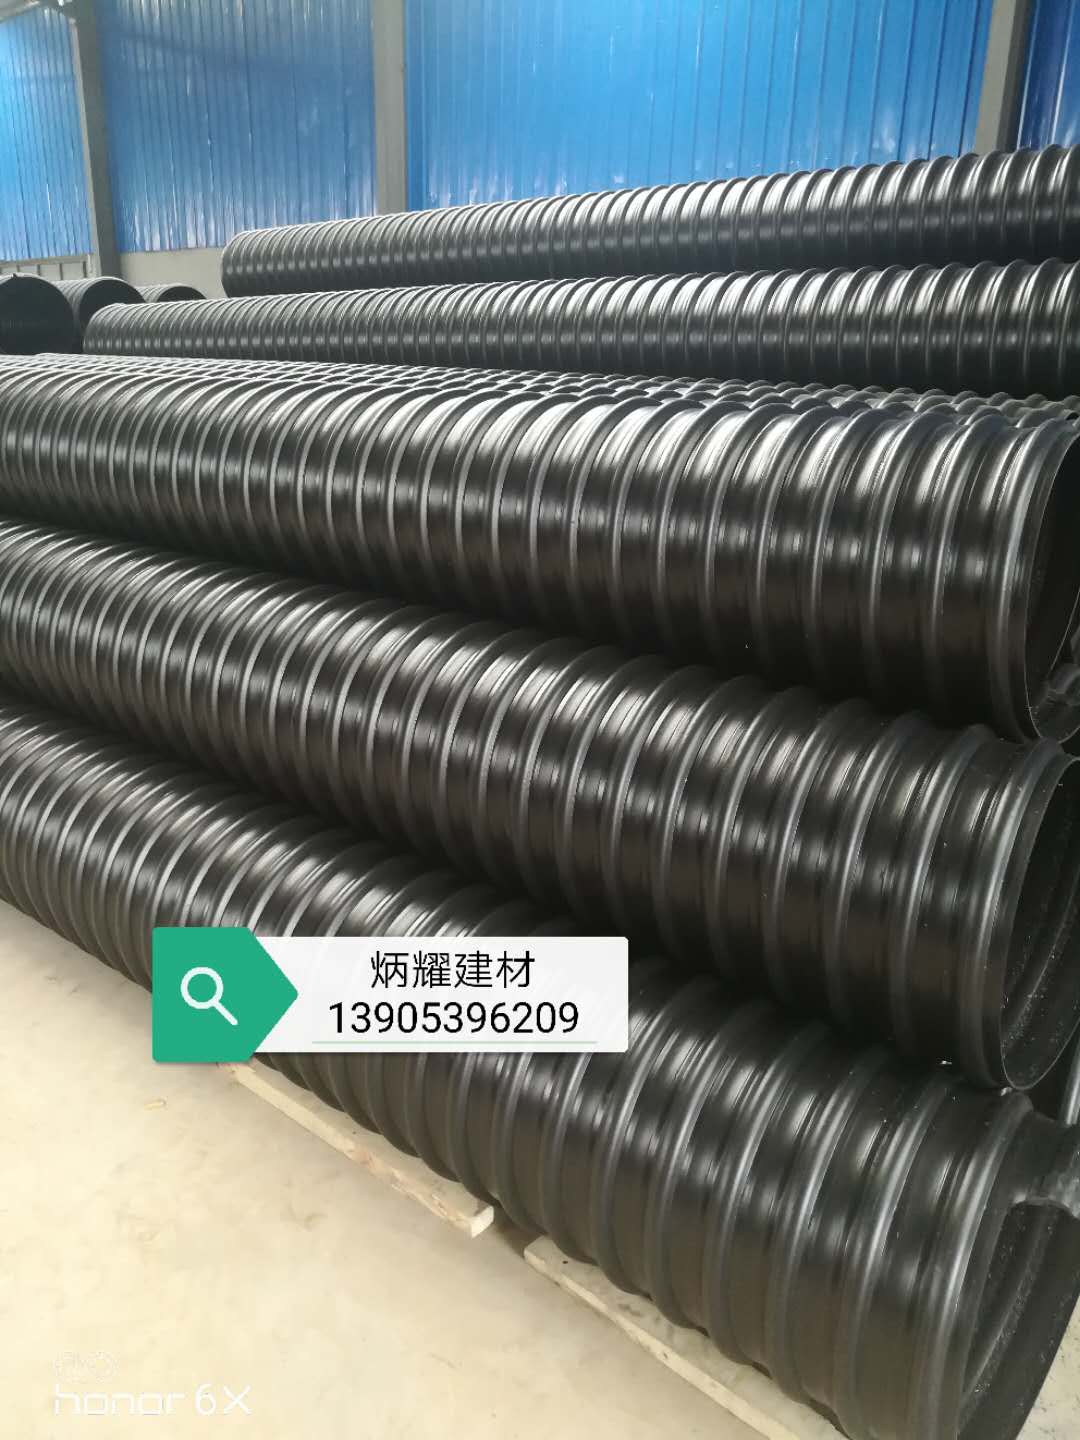 供应400PE钢带增强波纹管生产厂家 400PE钢带波纹管图片